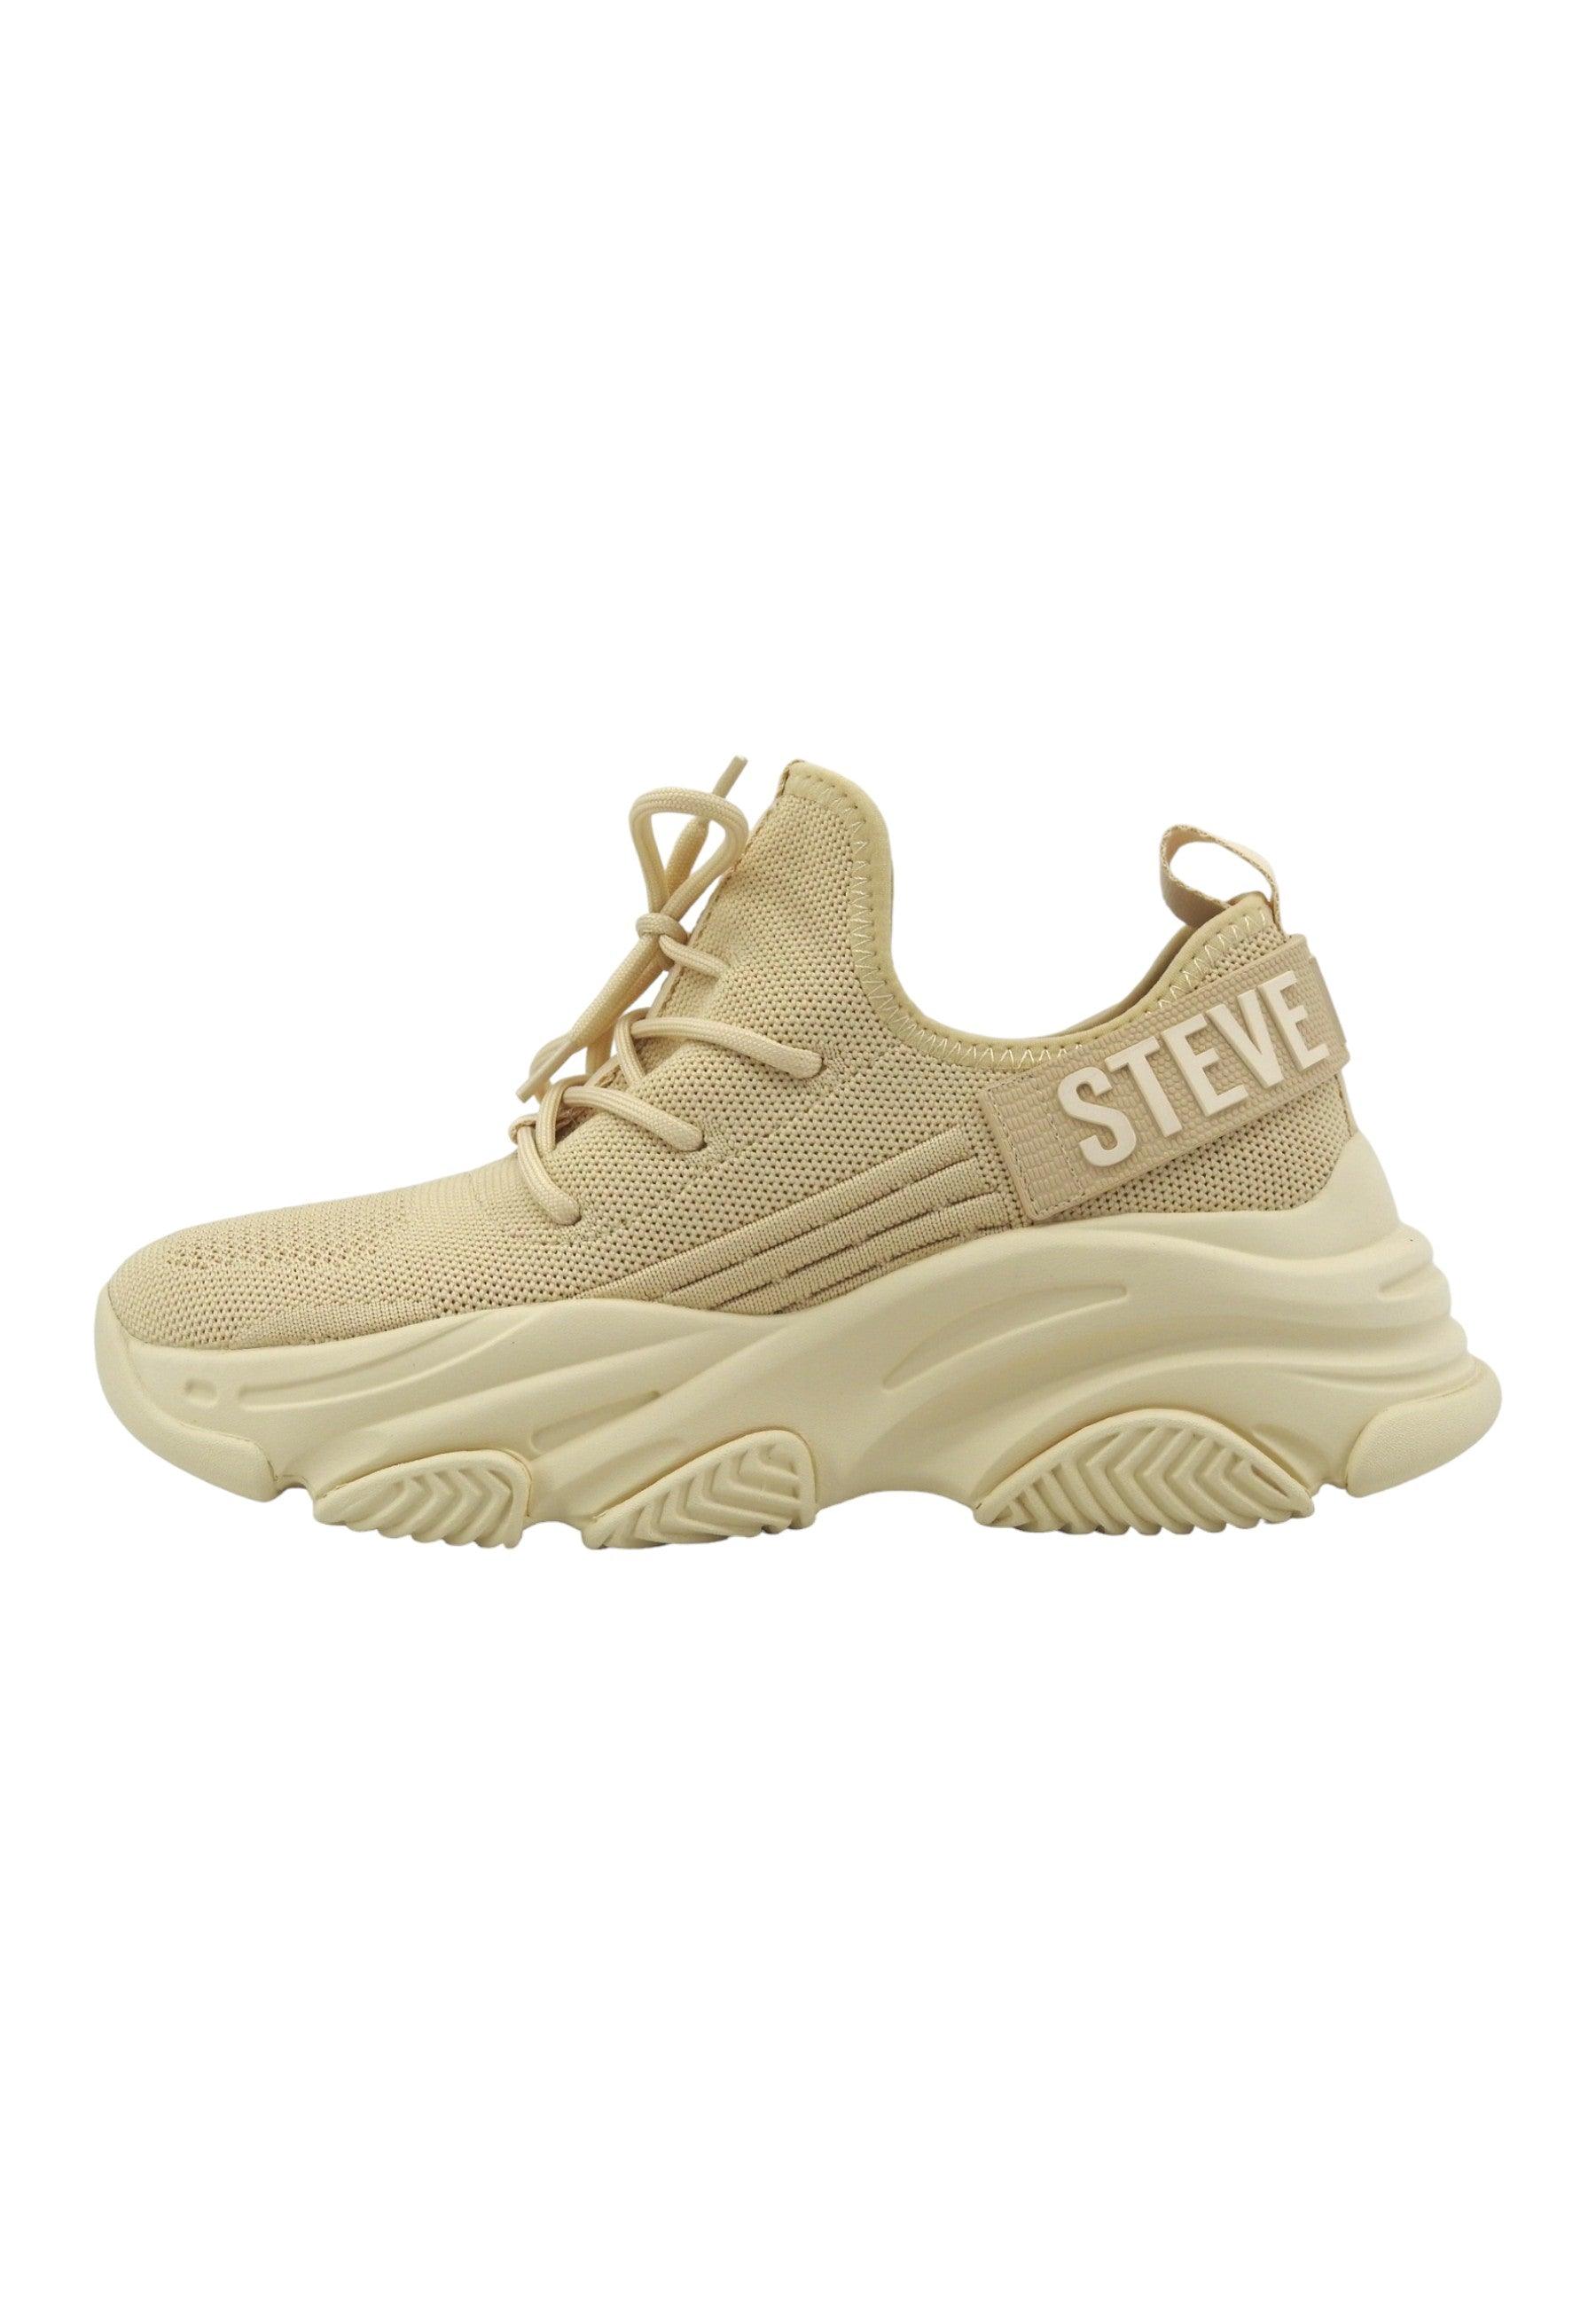 STEVE MADDEN Protege Sneaker Donna Off White Beige PROT04S1 - Sandrini Calzature e Abbigliamento